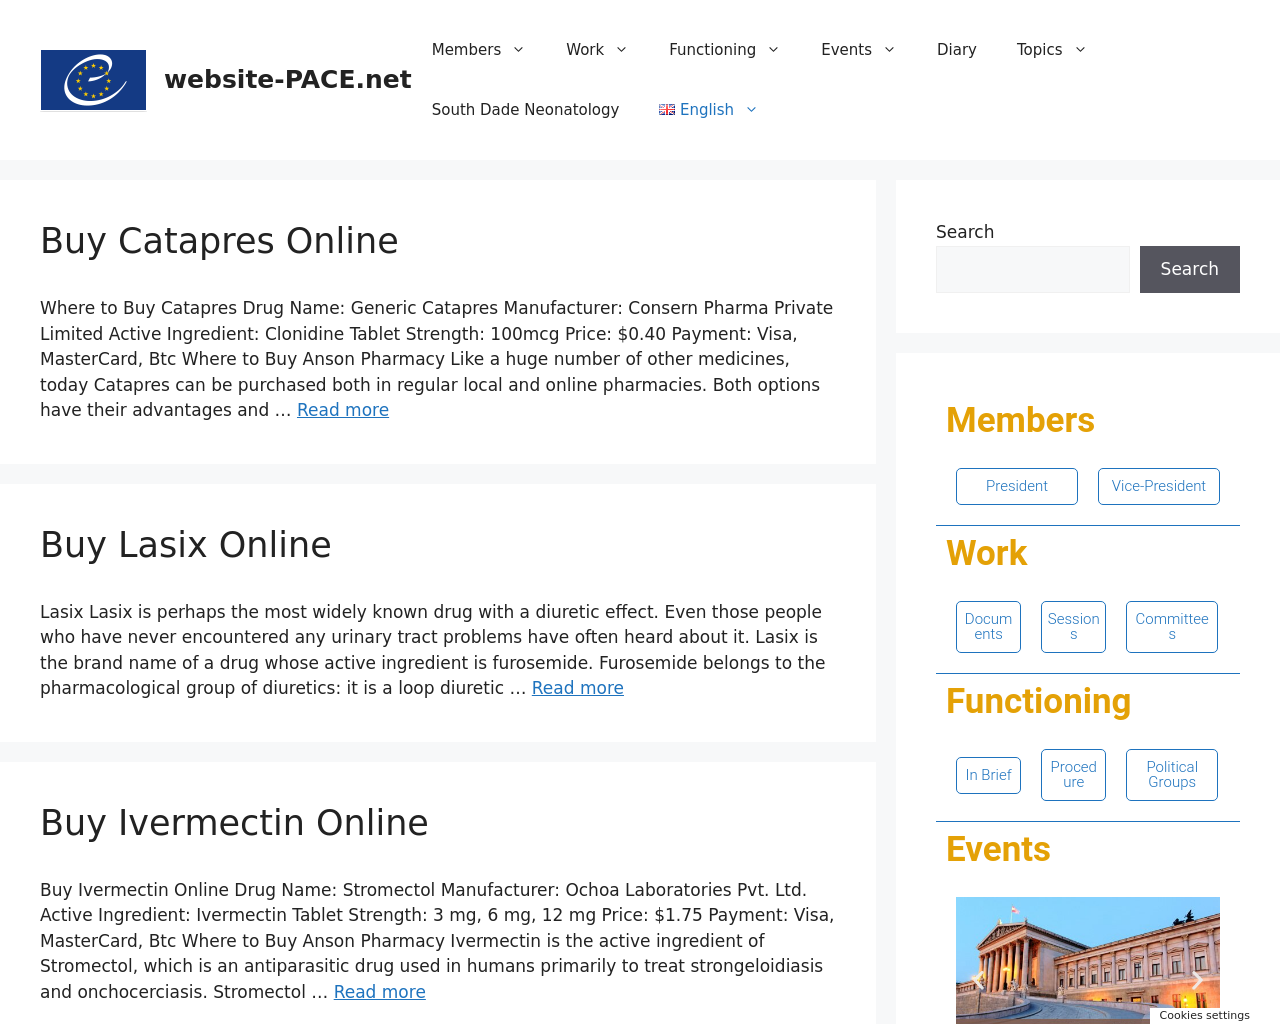 website-pace.net